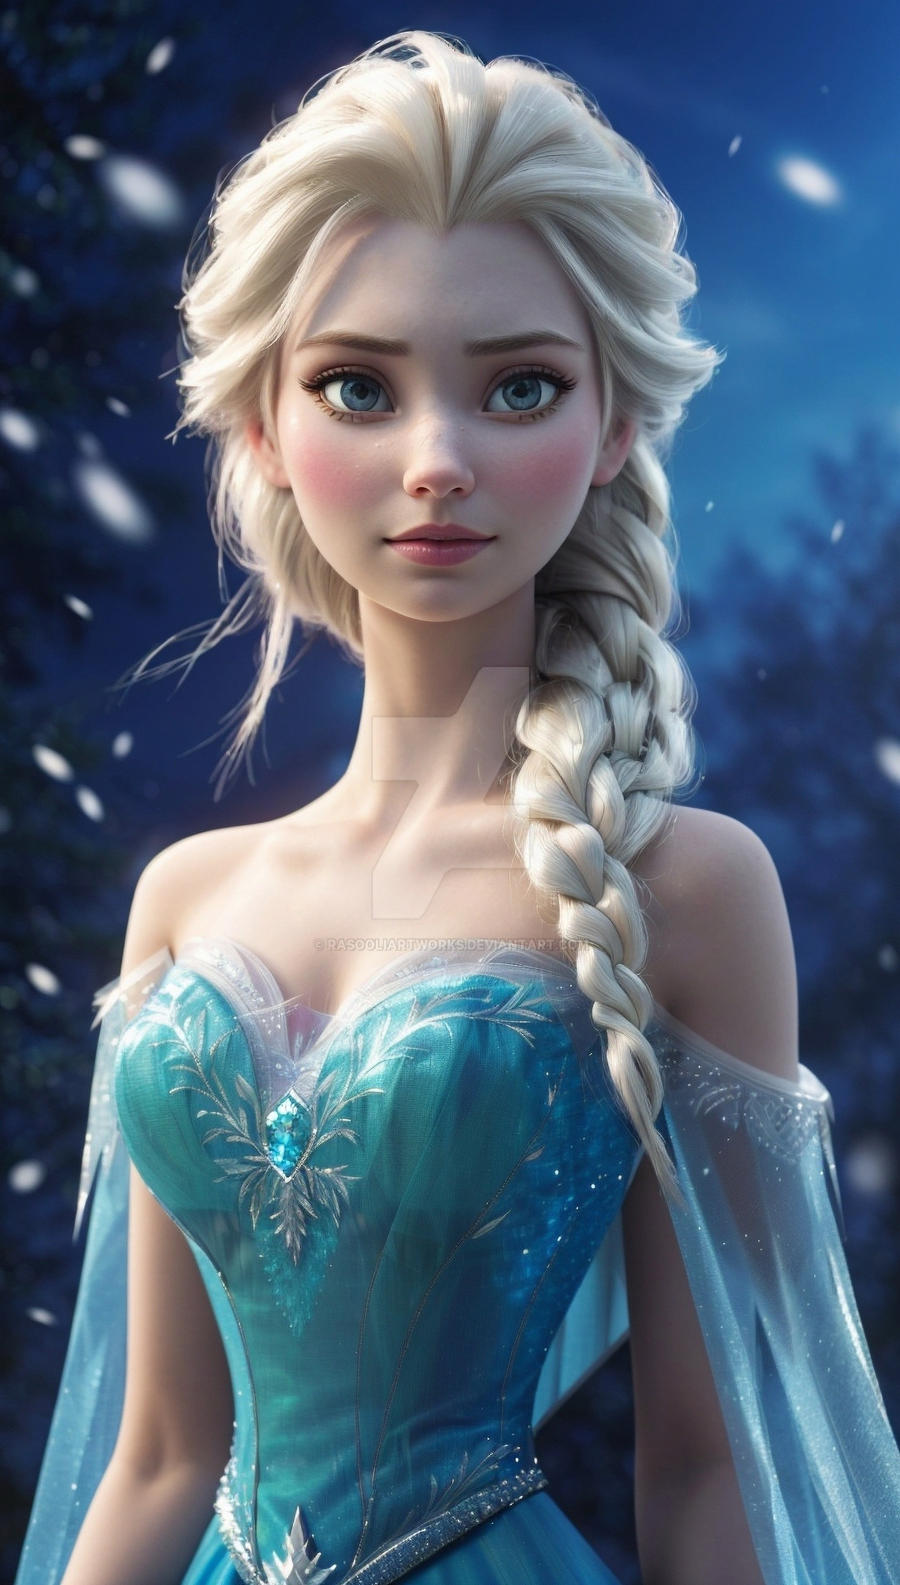 Elsa From Frozen by RasooliArtworks on DeviantArt